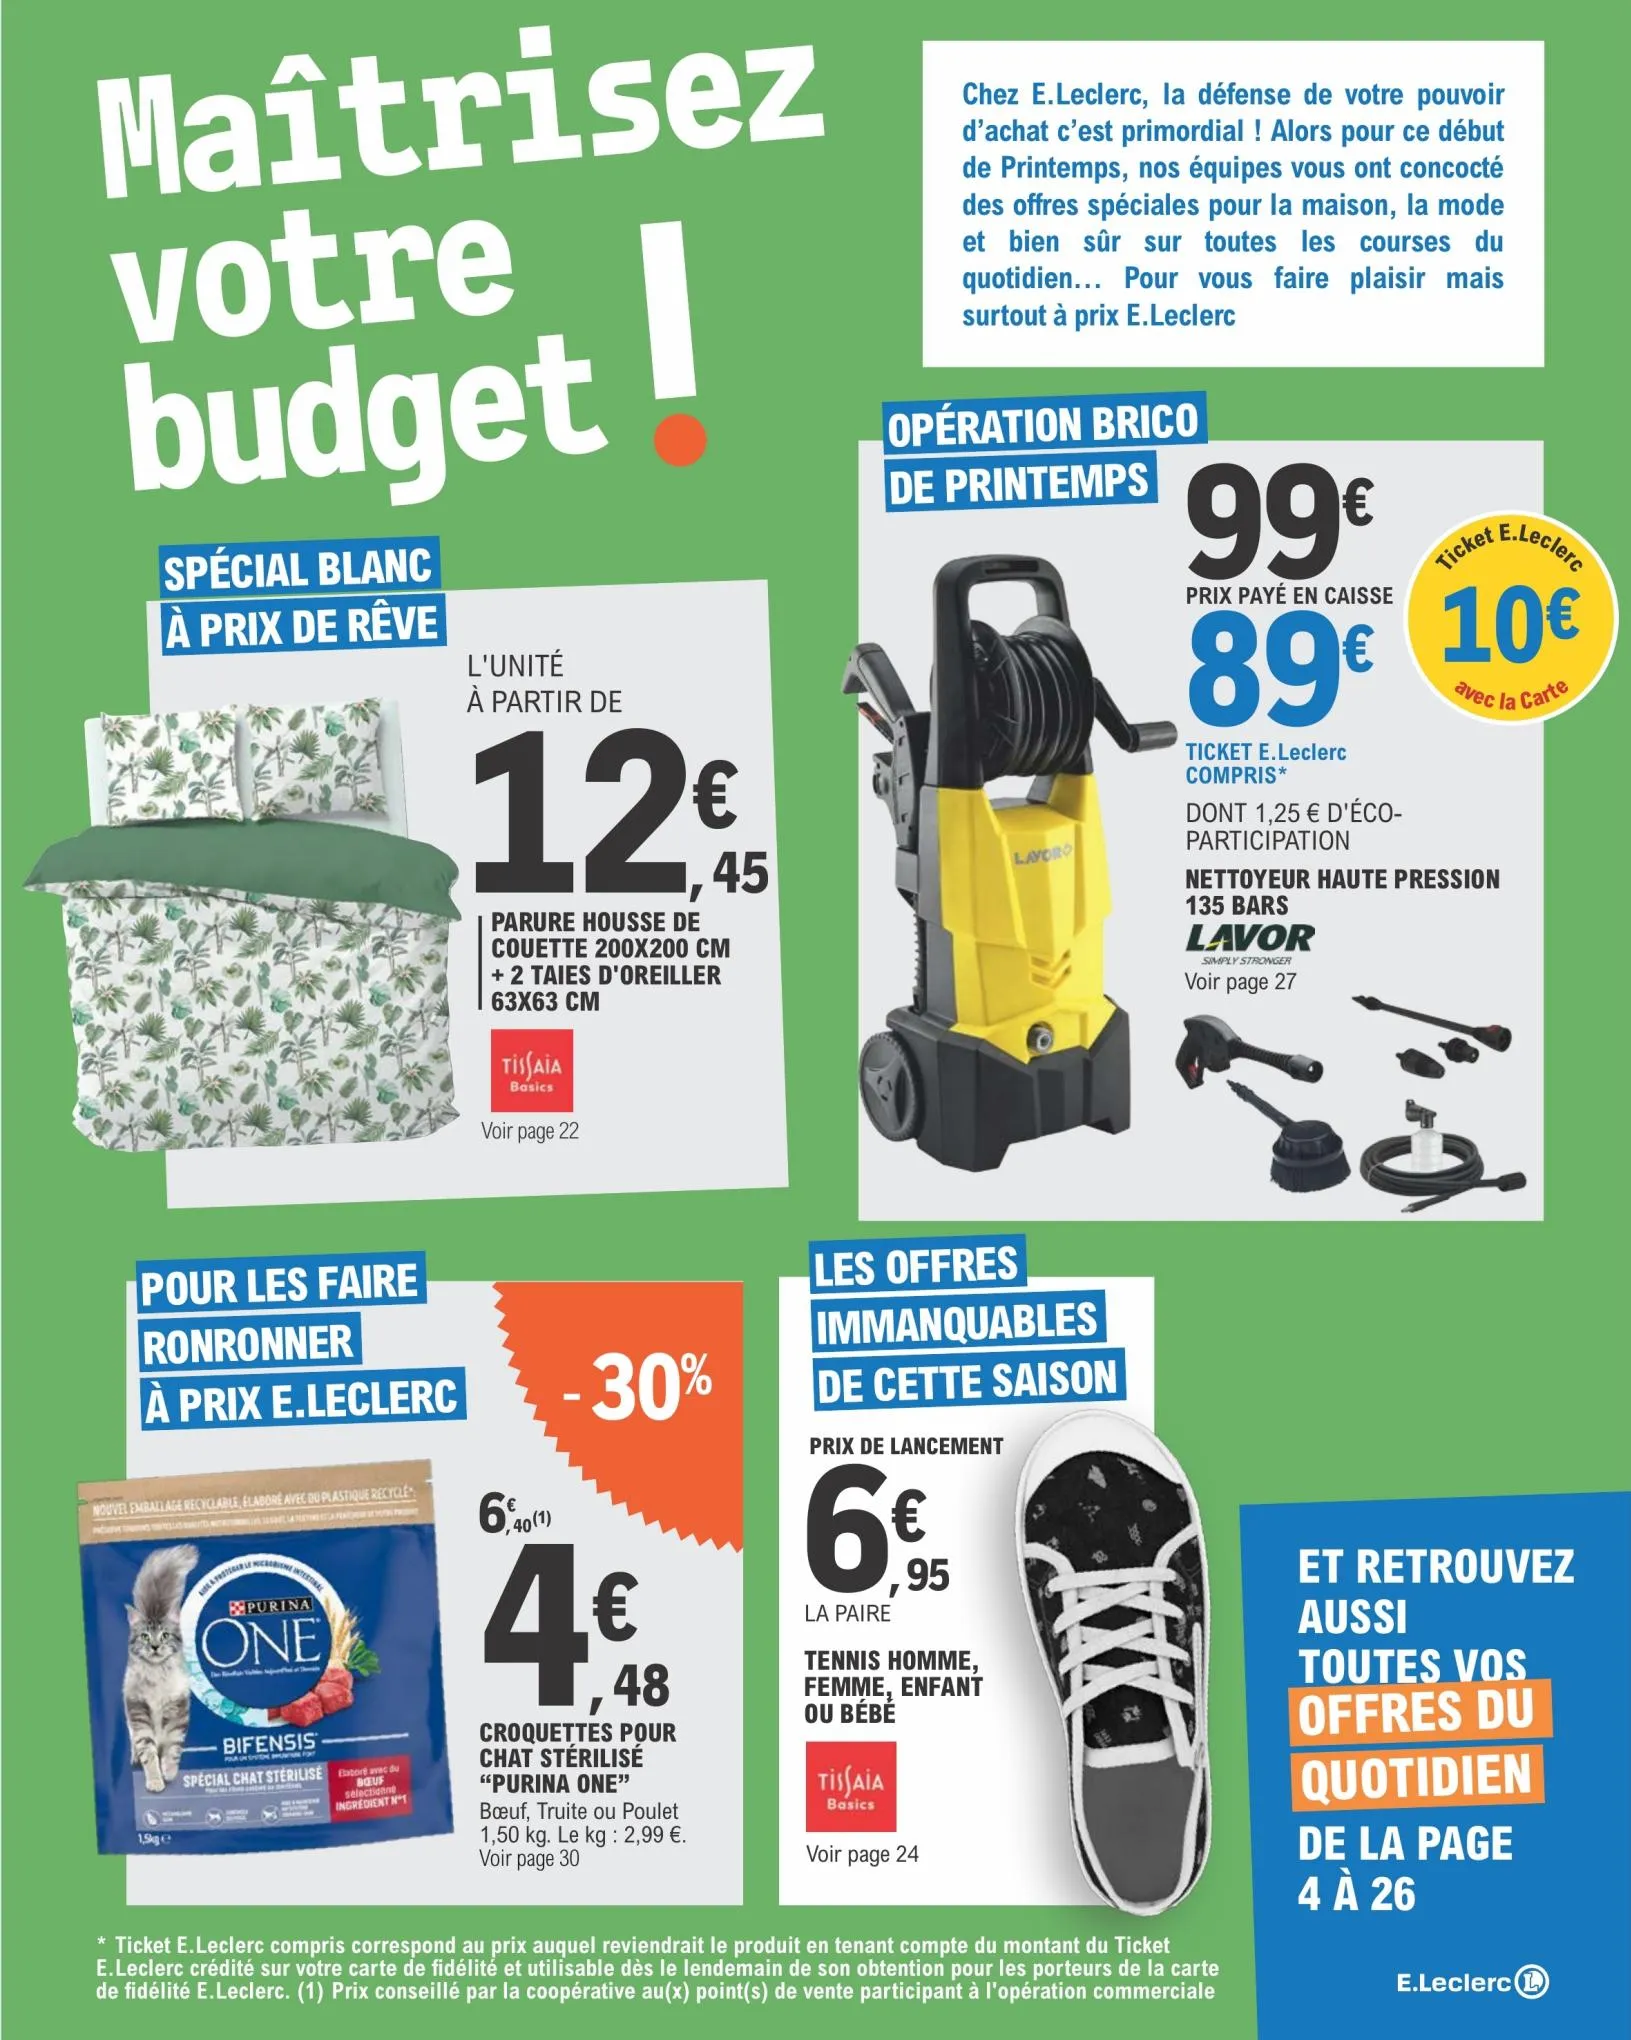 Catalogue Toutes vos coursesdu quotidien a prix E.Leclerc, page 00003